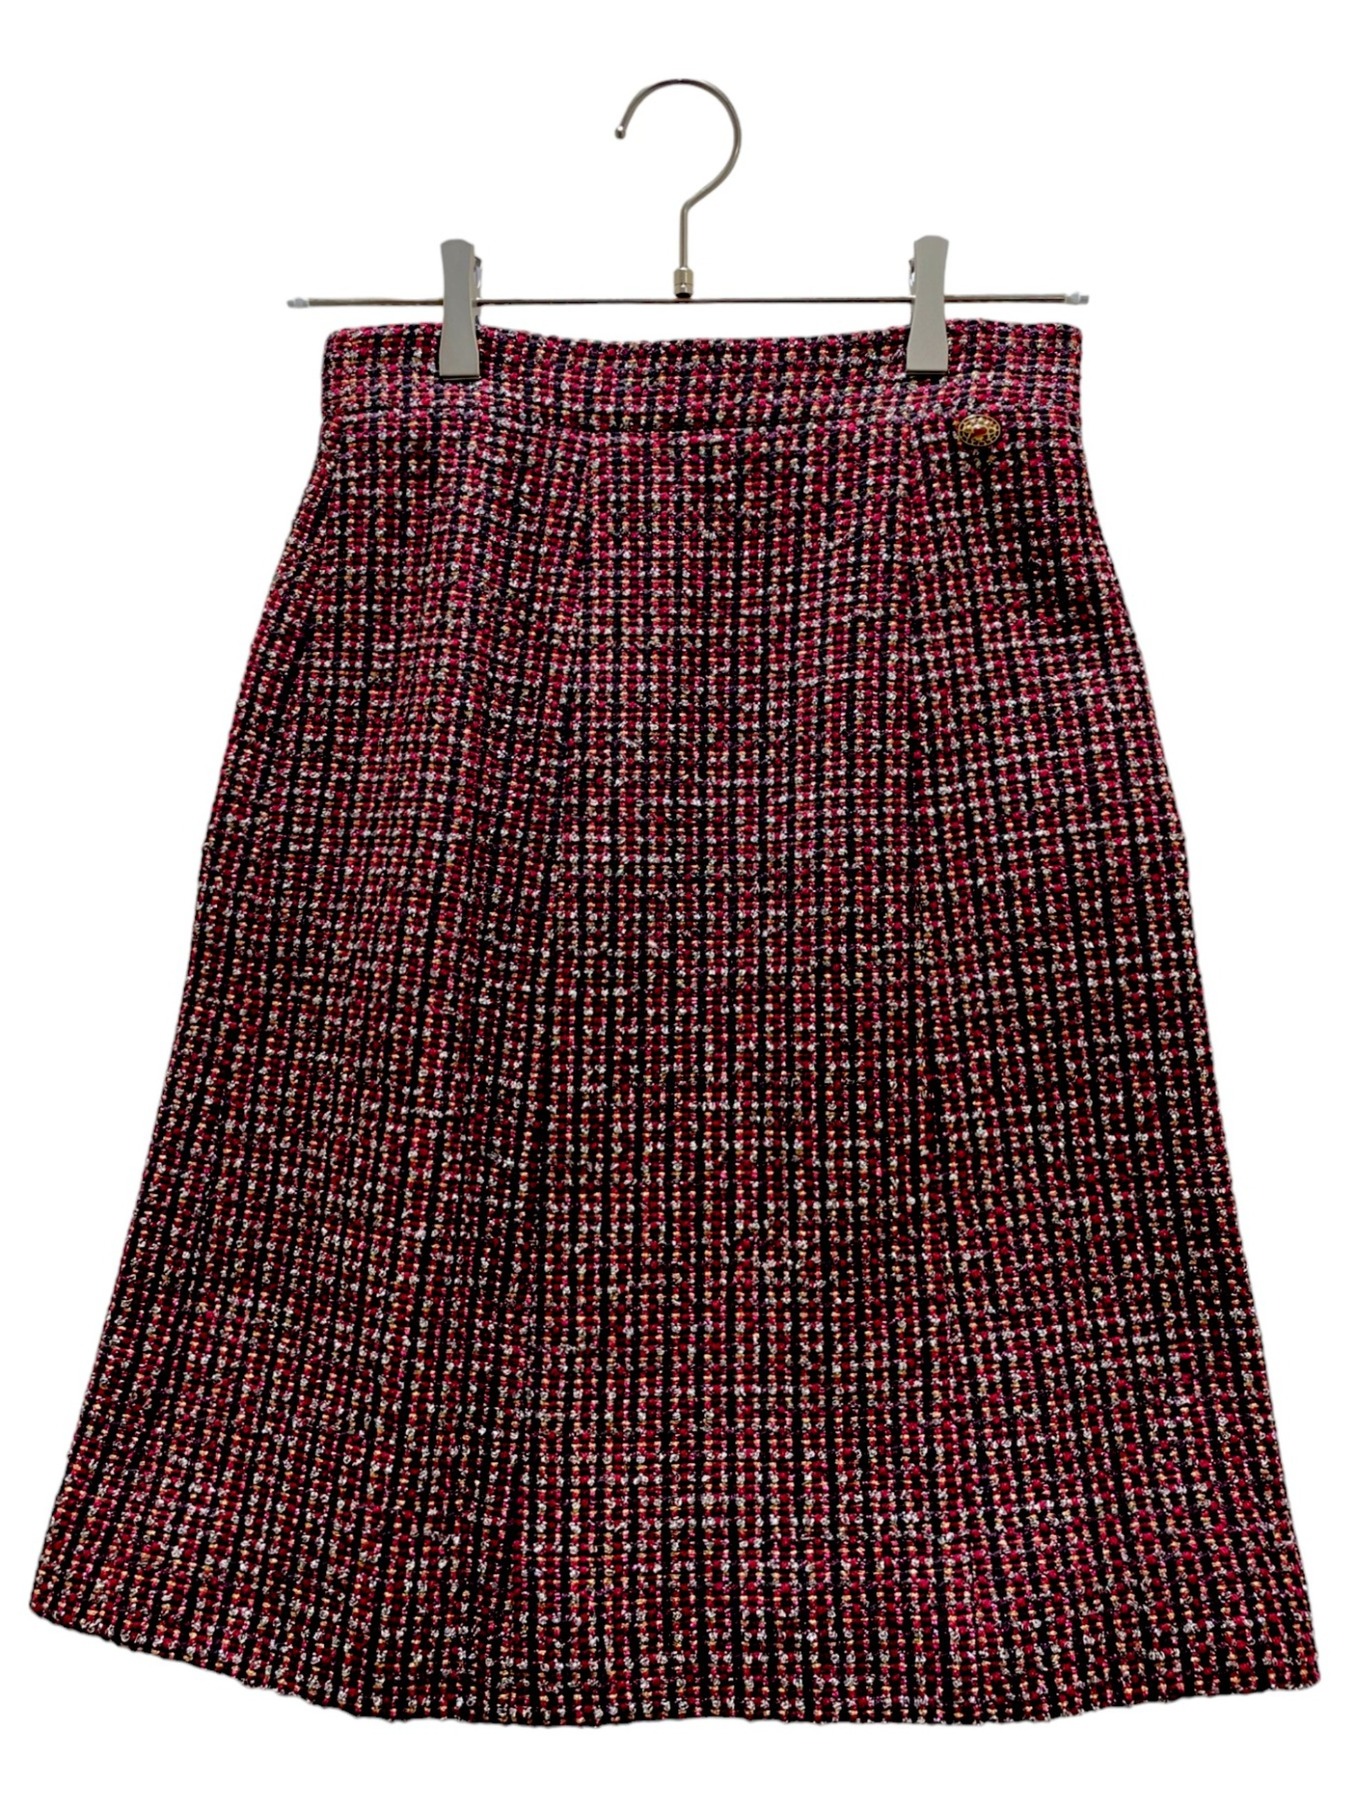 CHANEL (シャネル) Tweed skirt レッド×ブラック サイズ:36